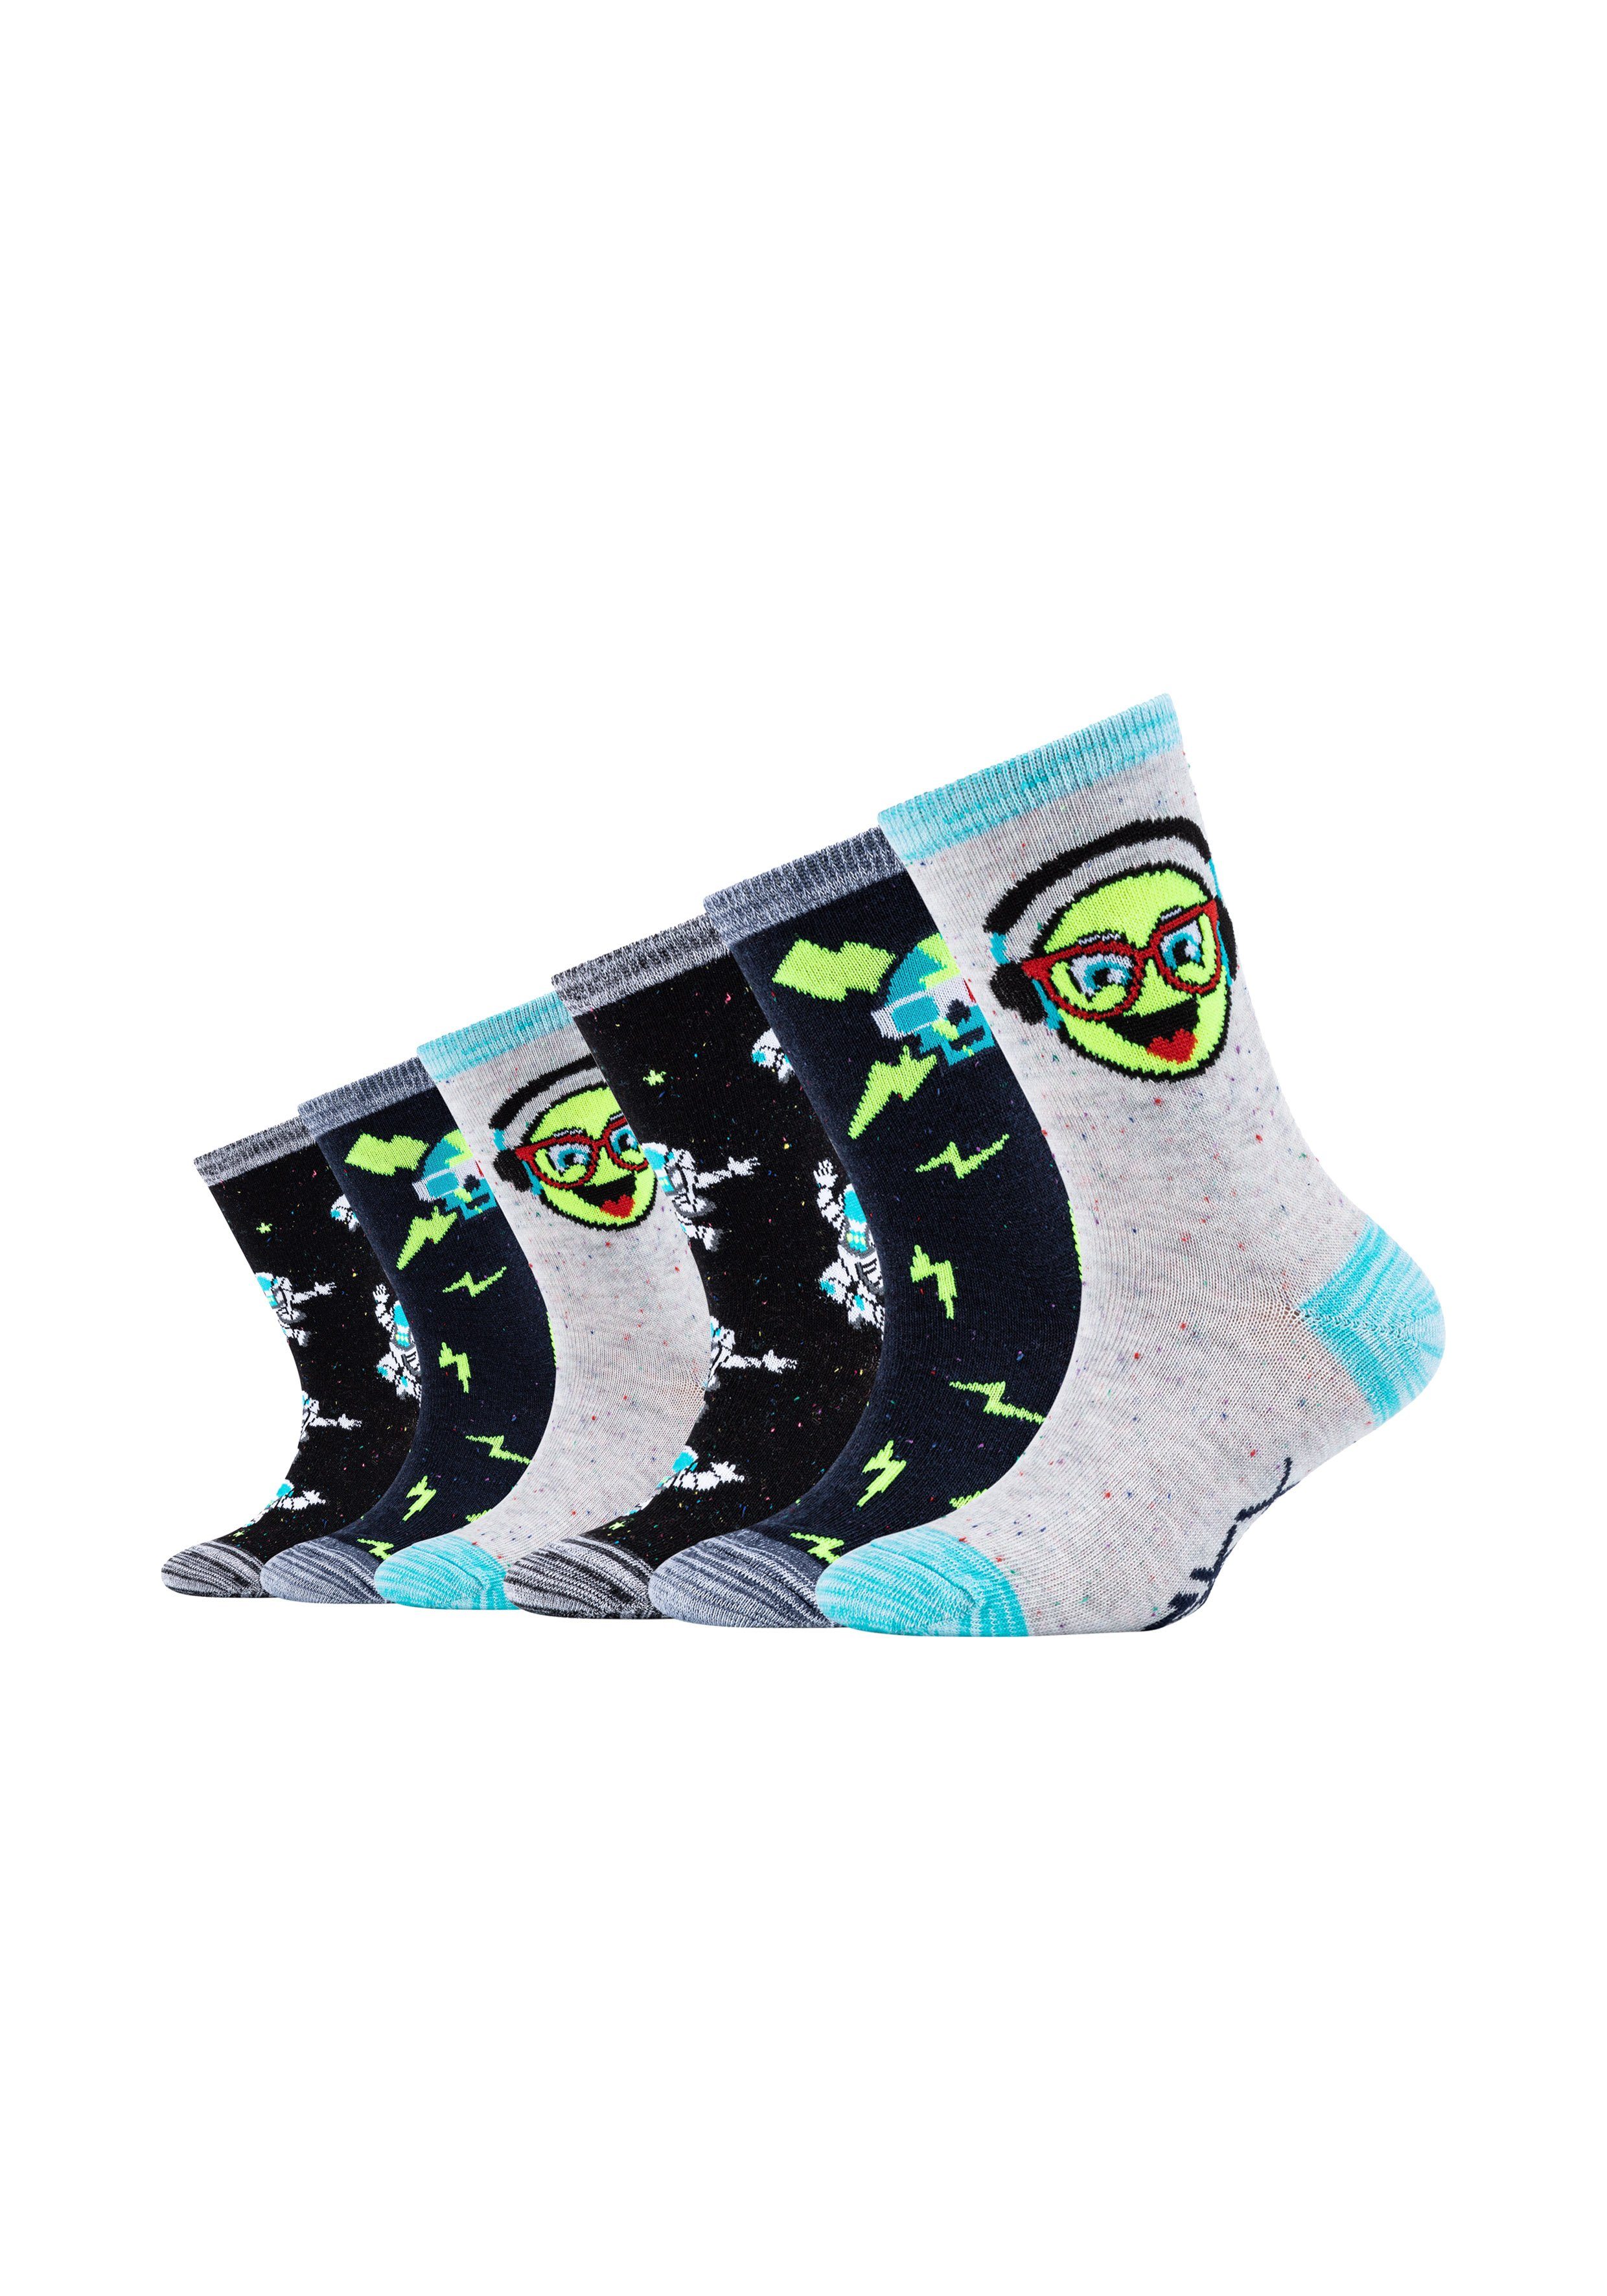 Skechers Socken (6-Paar) 6er-Pack Tragen & Smile Druckstellen Weltraum-Motiv, verhindert Komfort-Zehennaht im beim Space mit Casual